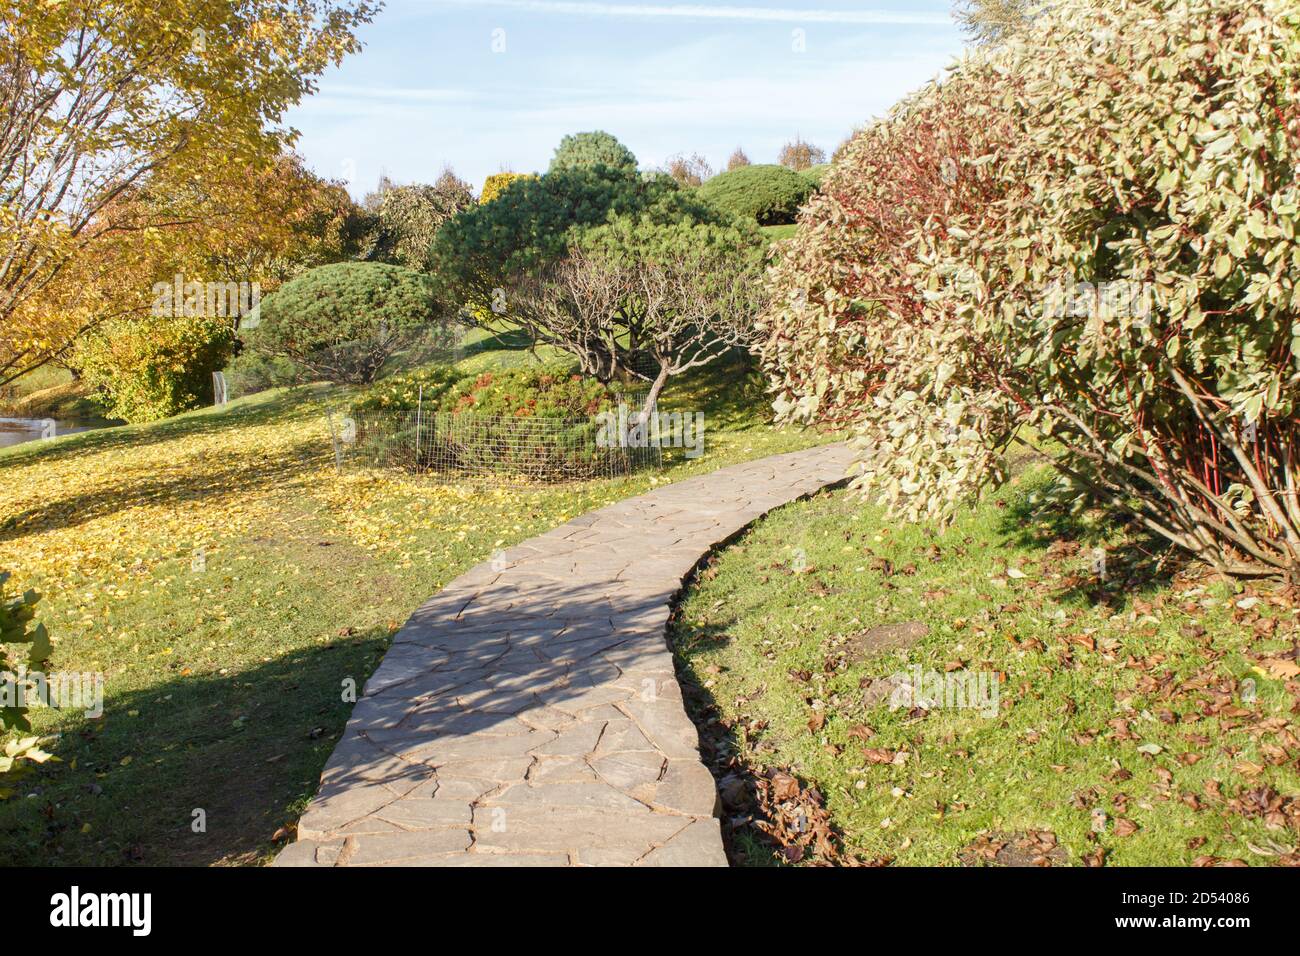 Park mit grünen Rasen, Bäumen, Hecken, getrimmten Büschen im Herbst. Modernes Landschaftsdesign. Stockfoto